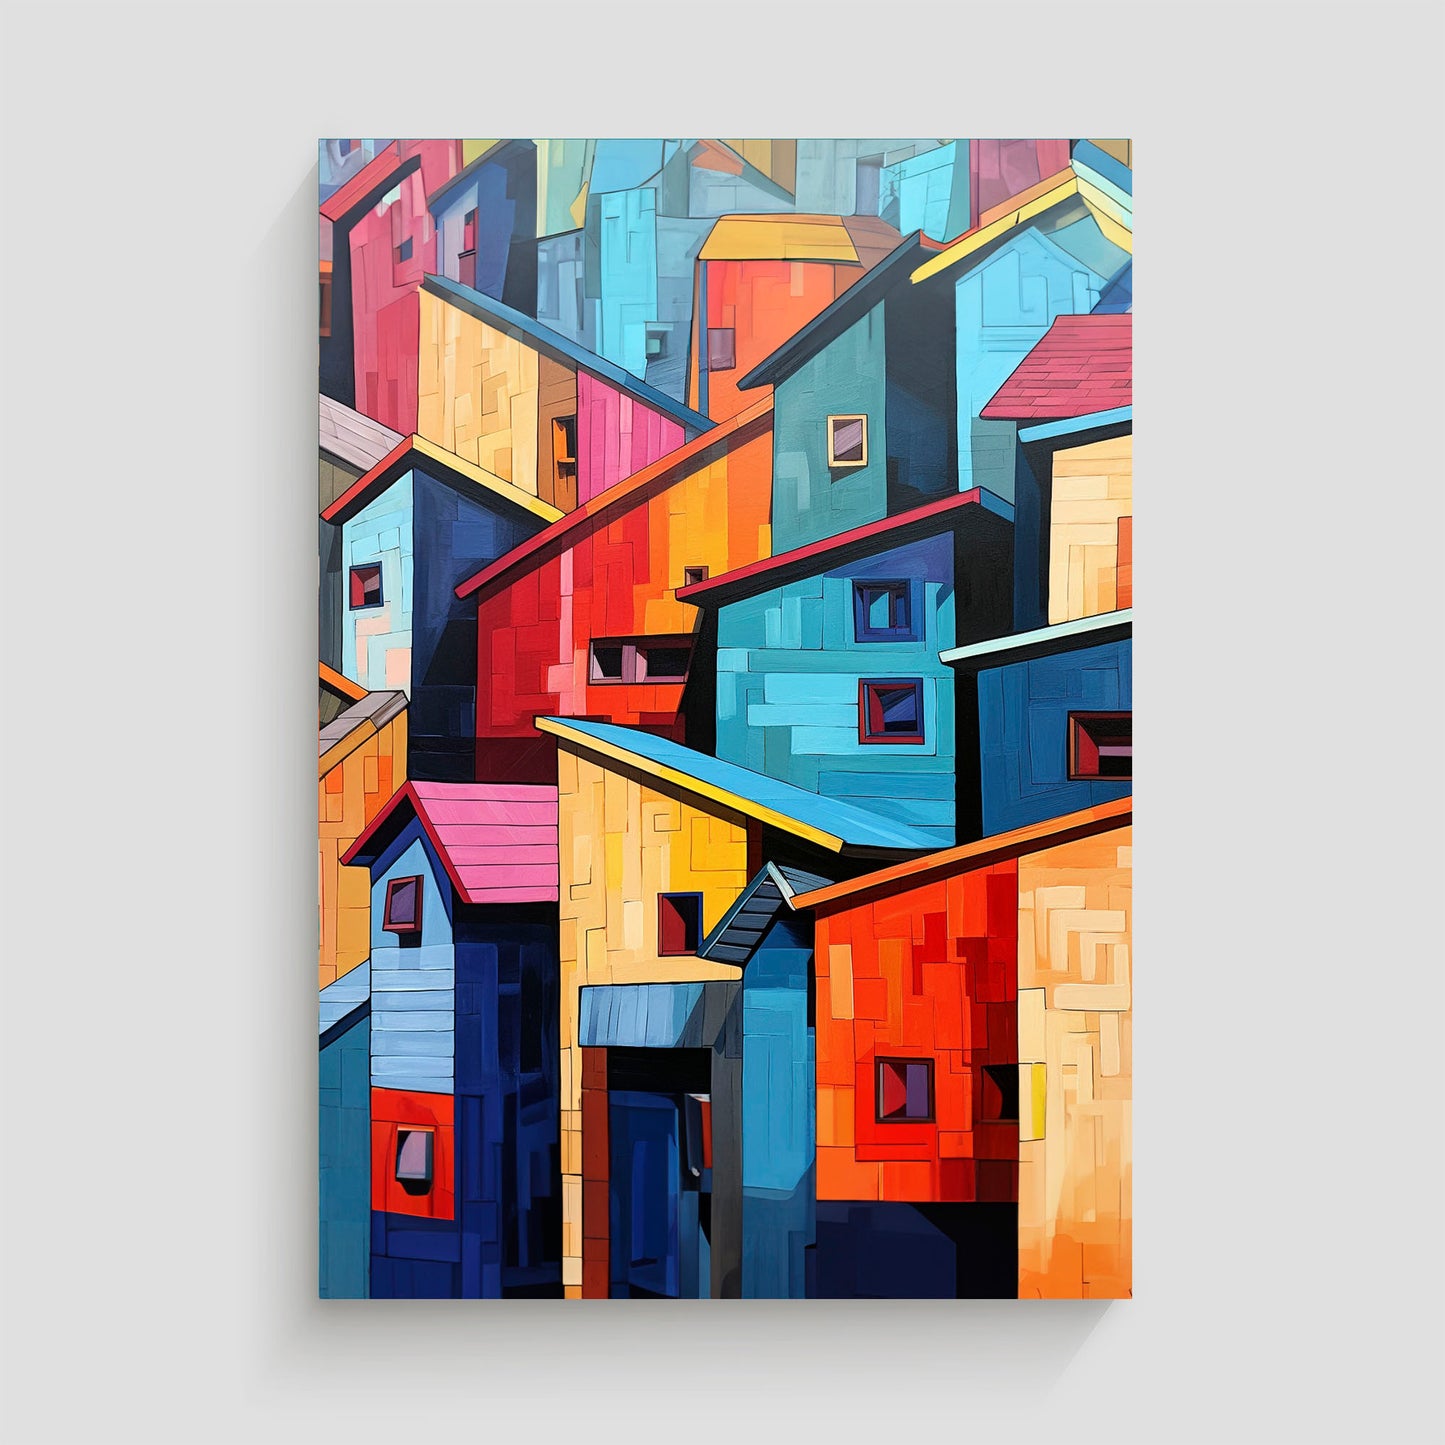 Imagen de fachadas de edificios urbanos pintadas en colores vibrantes y dispuestas de manera abstracta. La composición presenta una variedad de tonos brillantes y formas geométricas, creando una escena artística y dinámica.